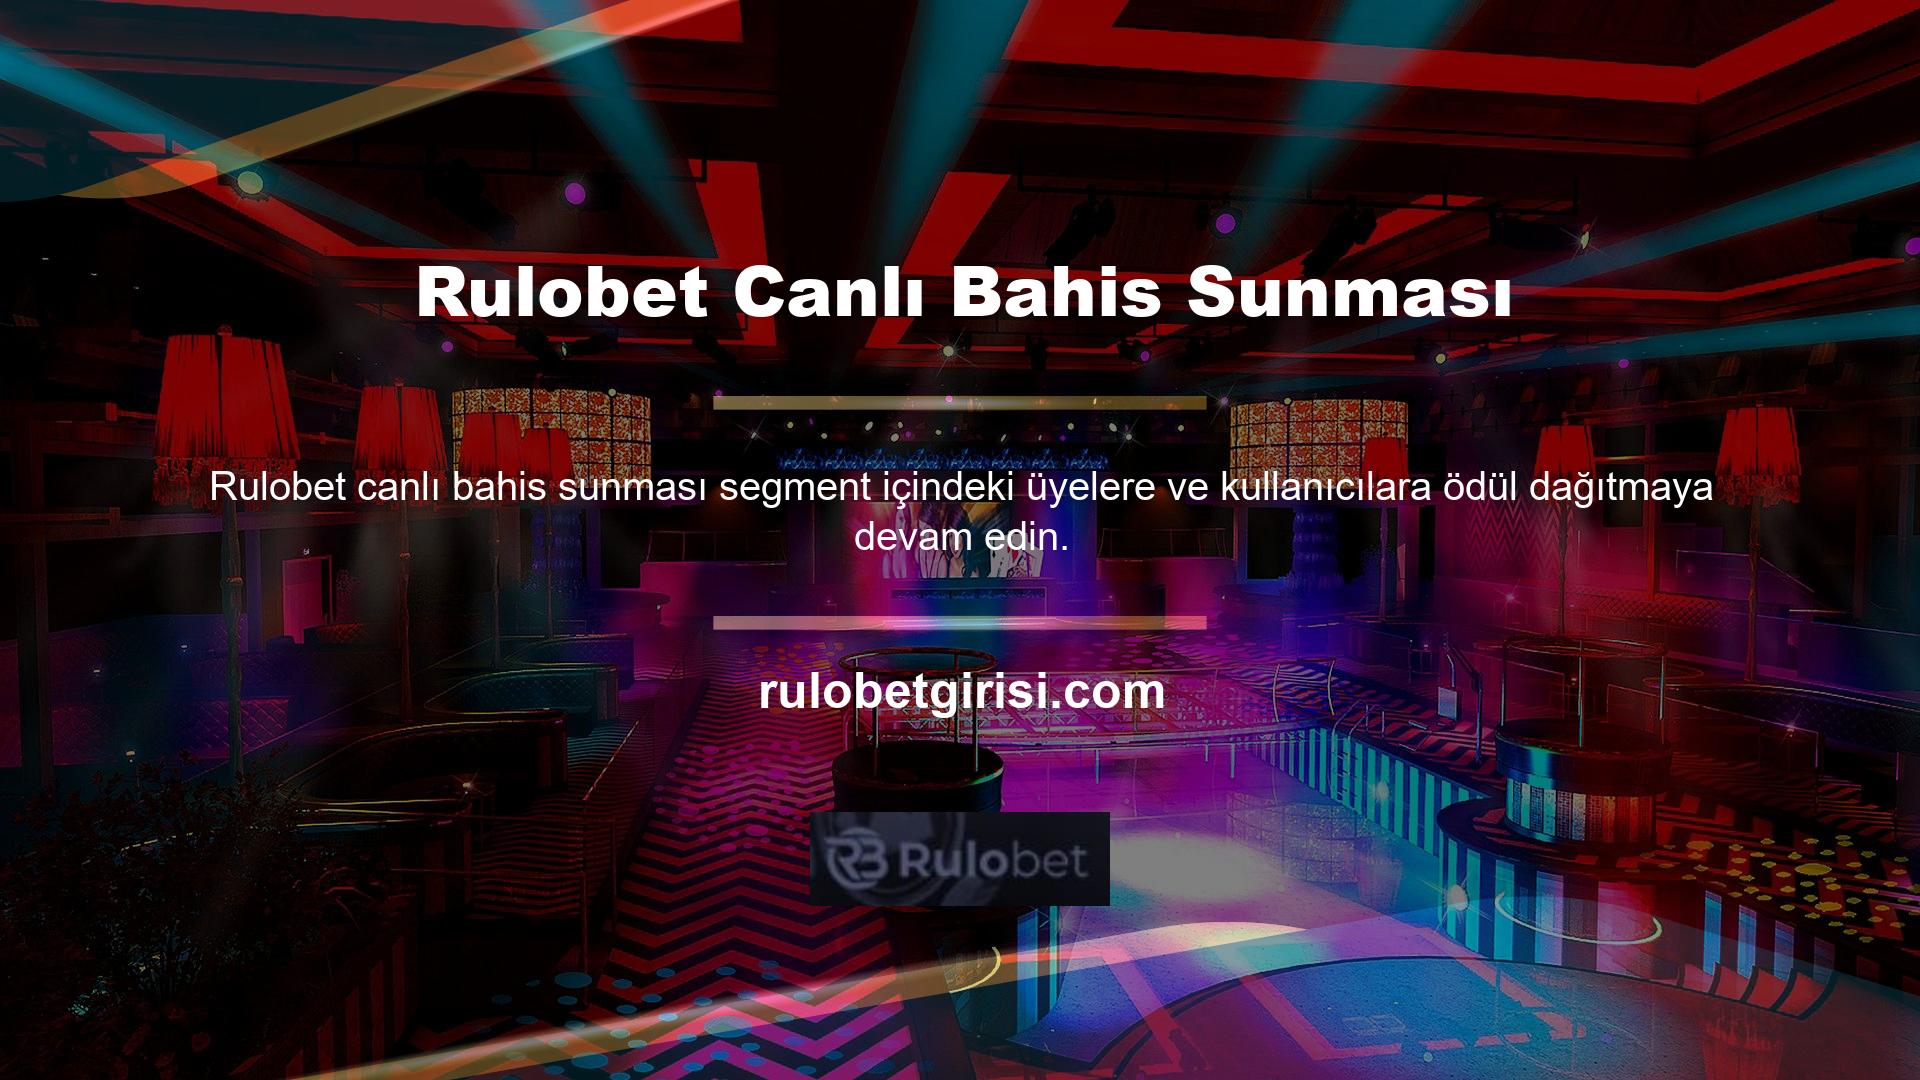 Canlı bahis bölümünü kullanmak istiyorsanız lütfen Rulobet markasının canlı bahis bölümünü ziyaret ediniz